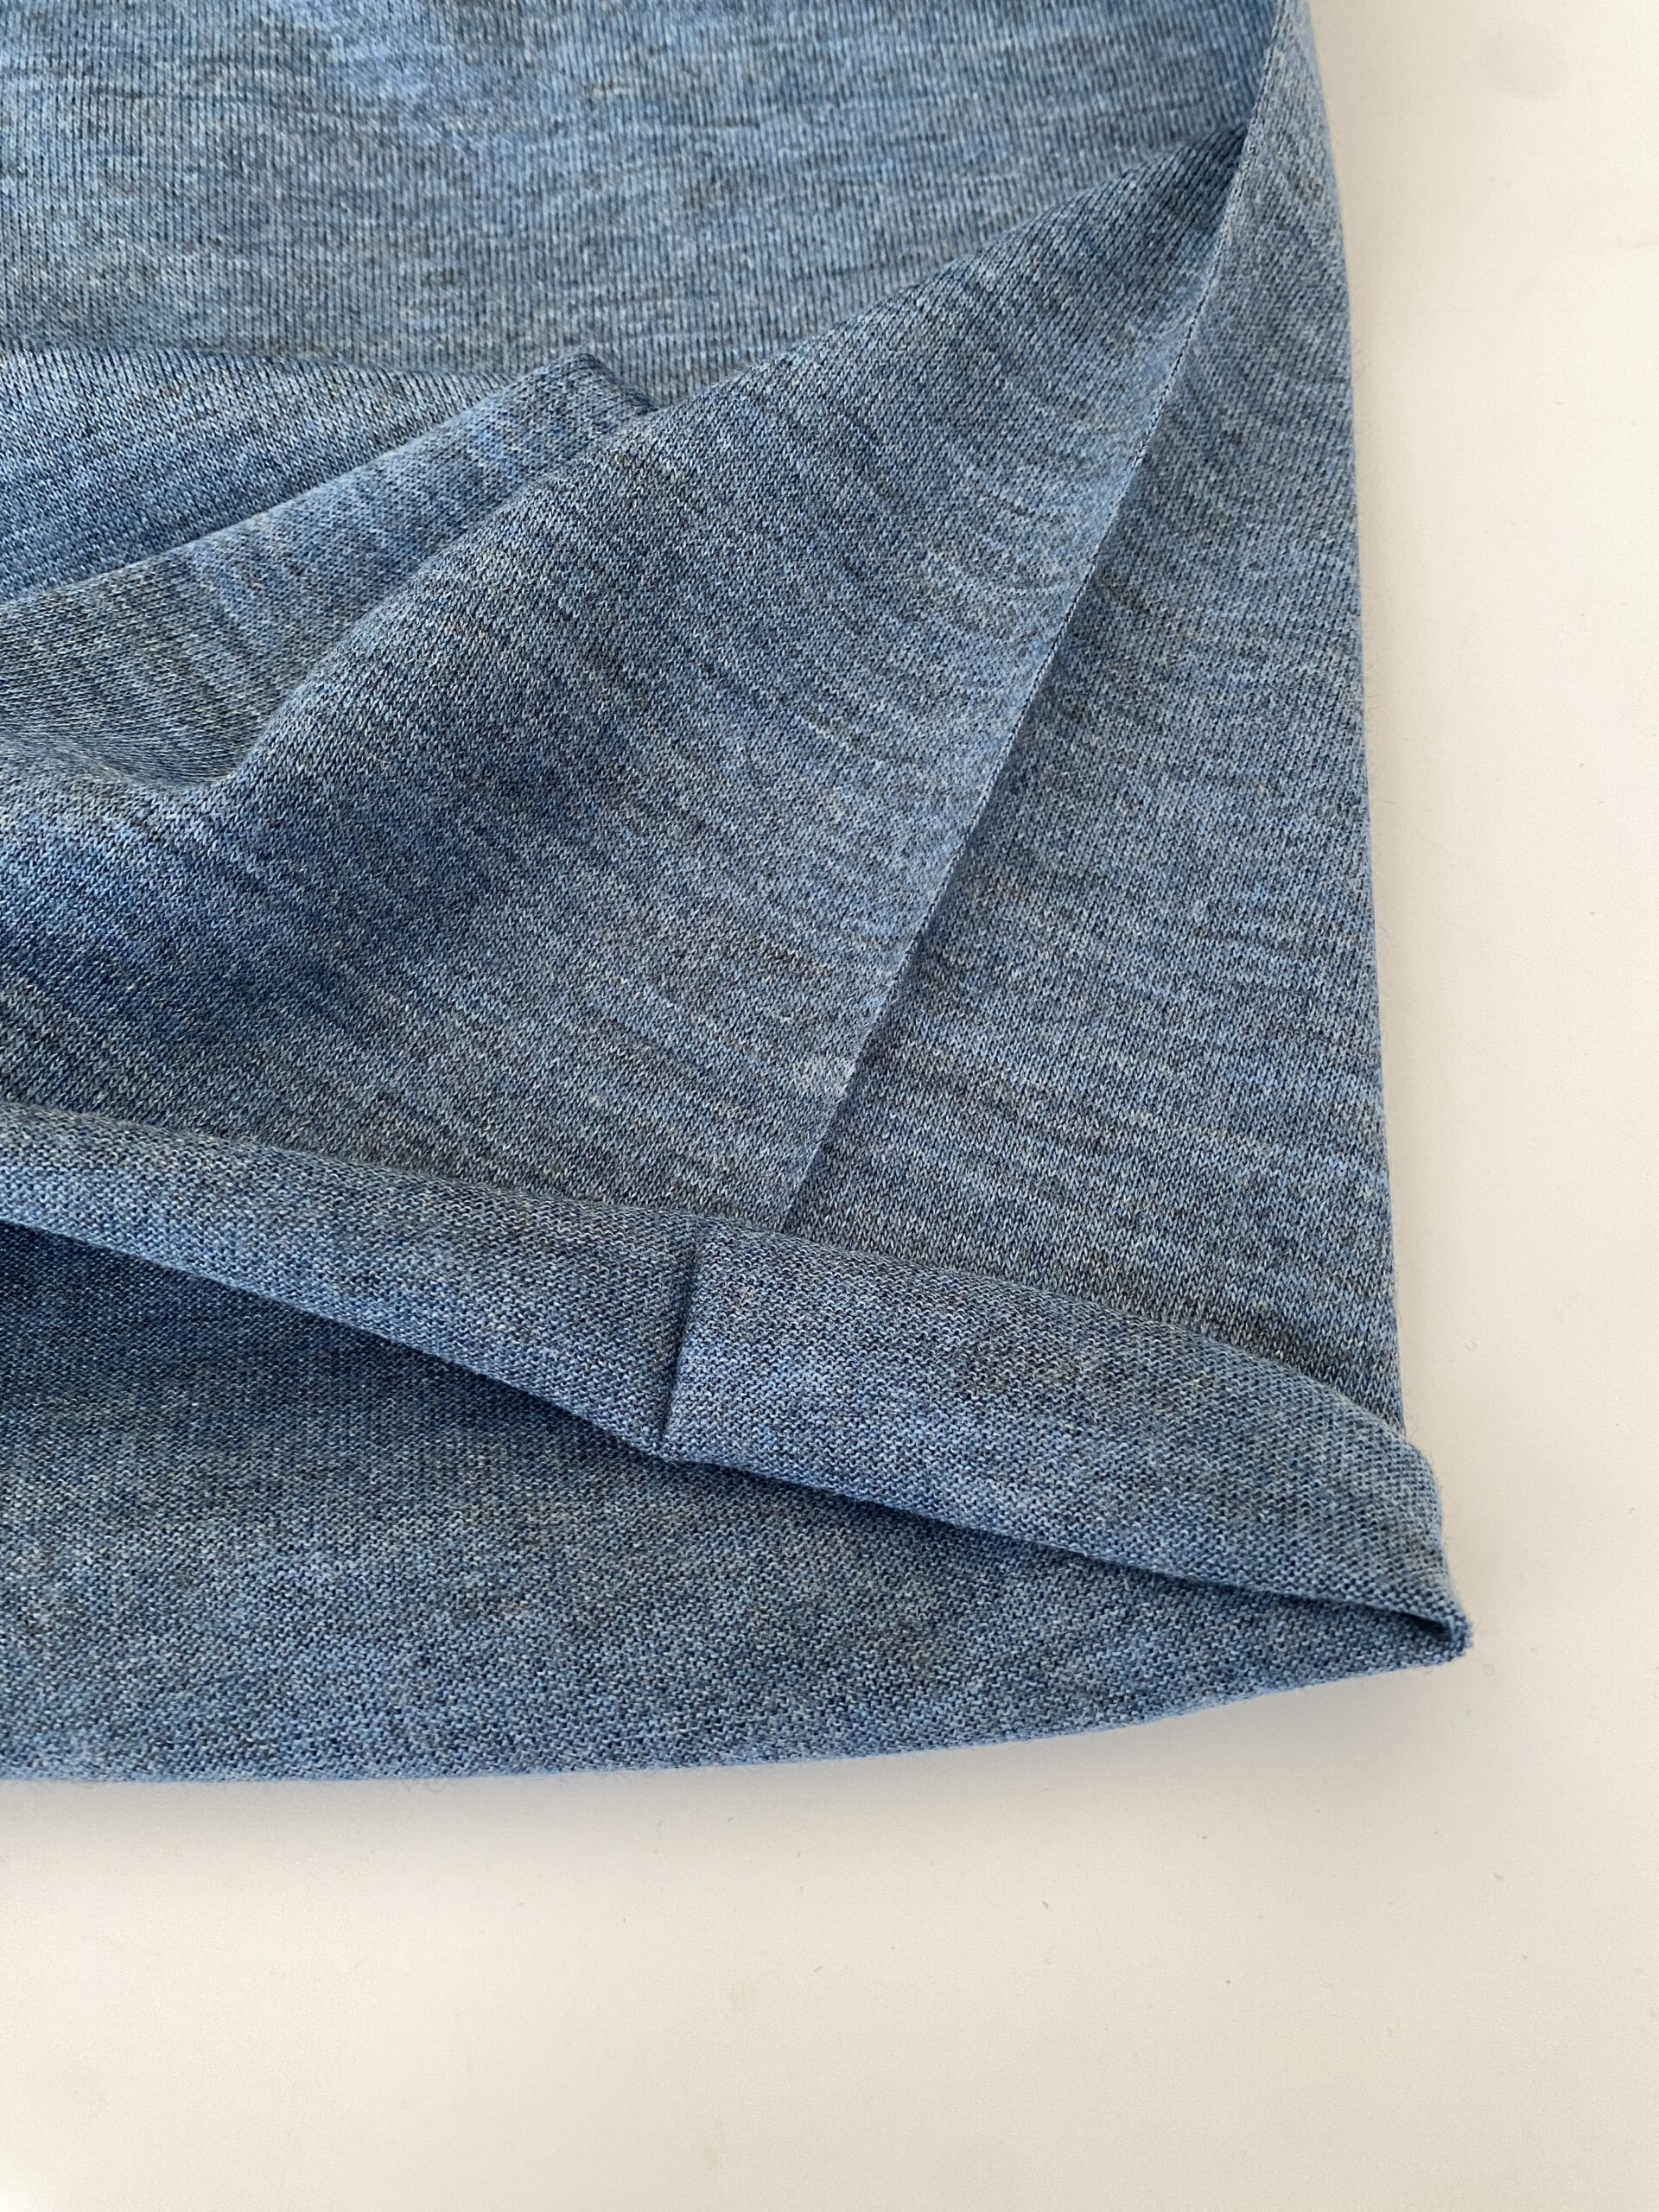 Deadstock blue melange wool jersey - Simply Fabrics